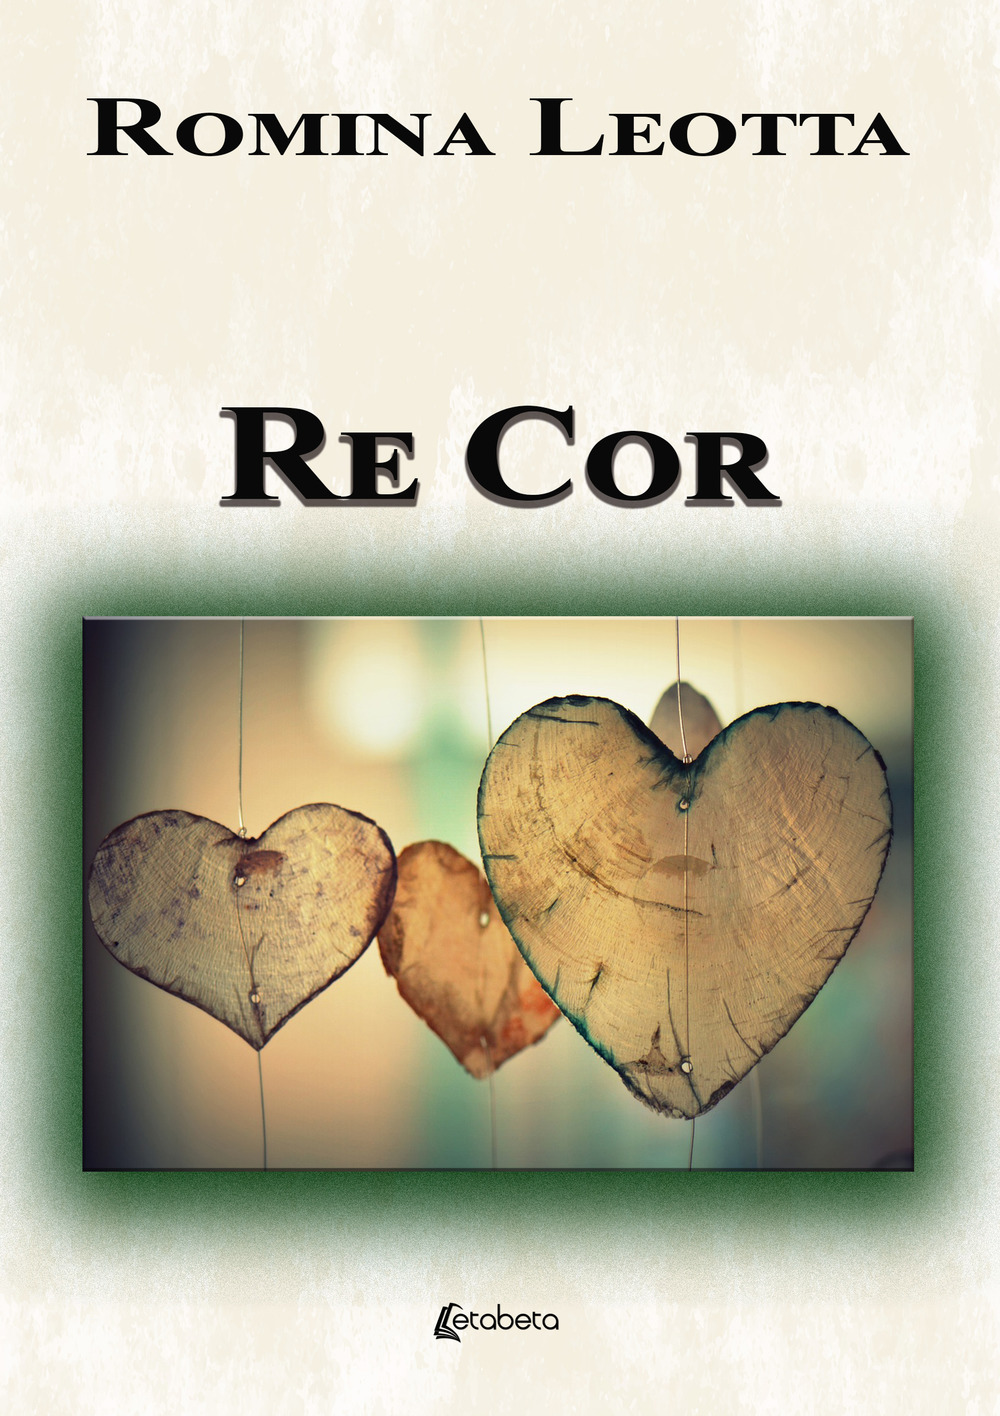 Re Cor